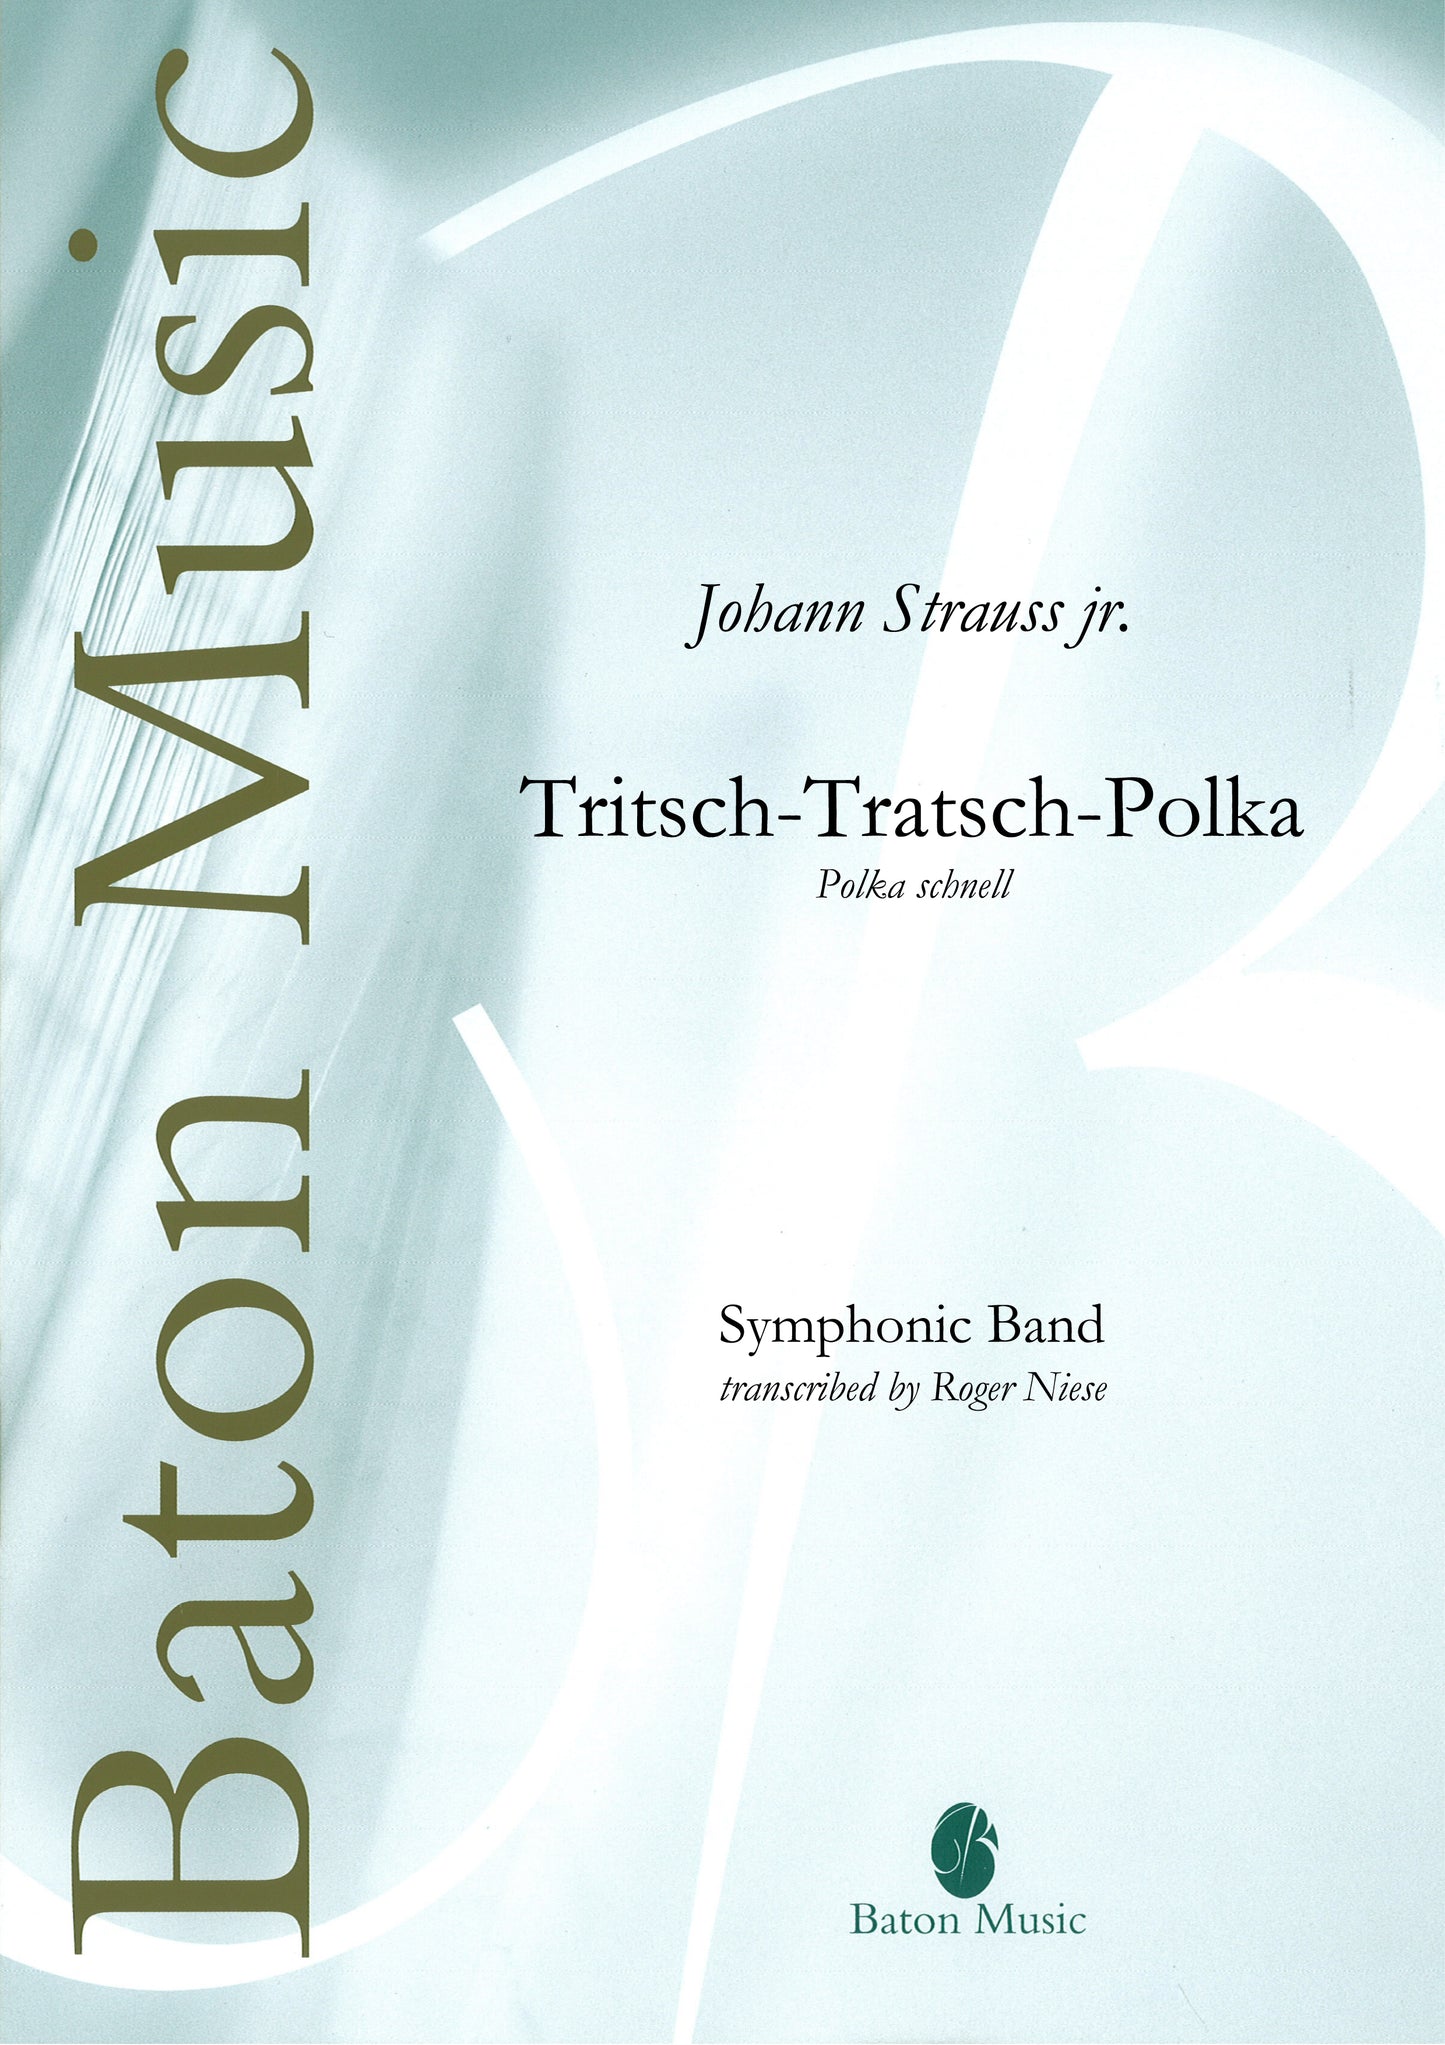 Tritsch-Tratsch-Polka - Johann Strauss